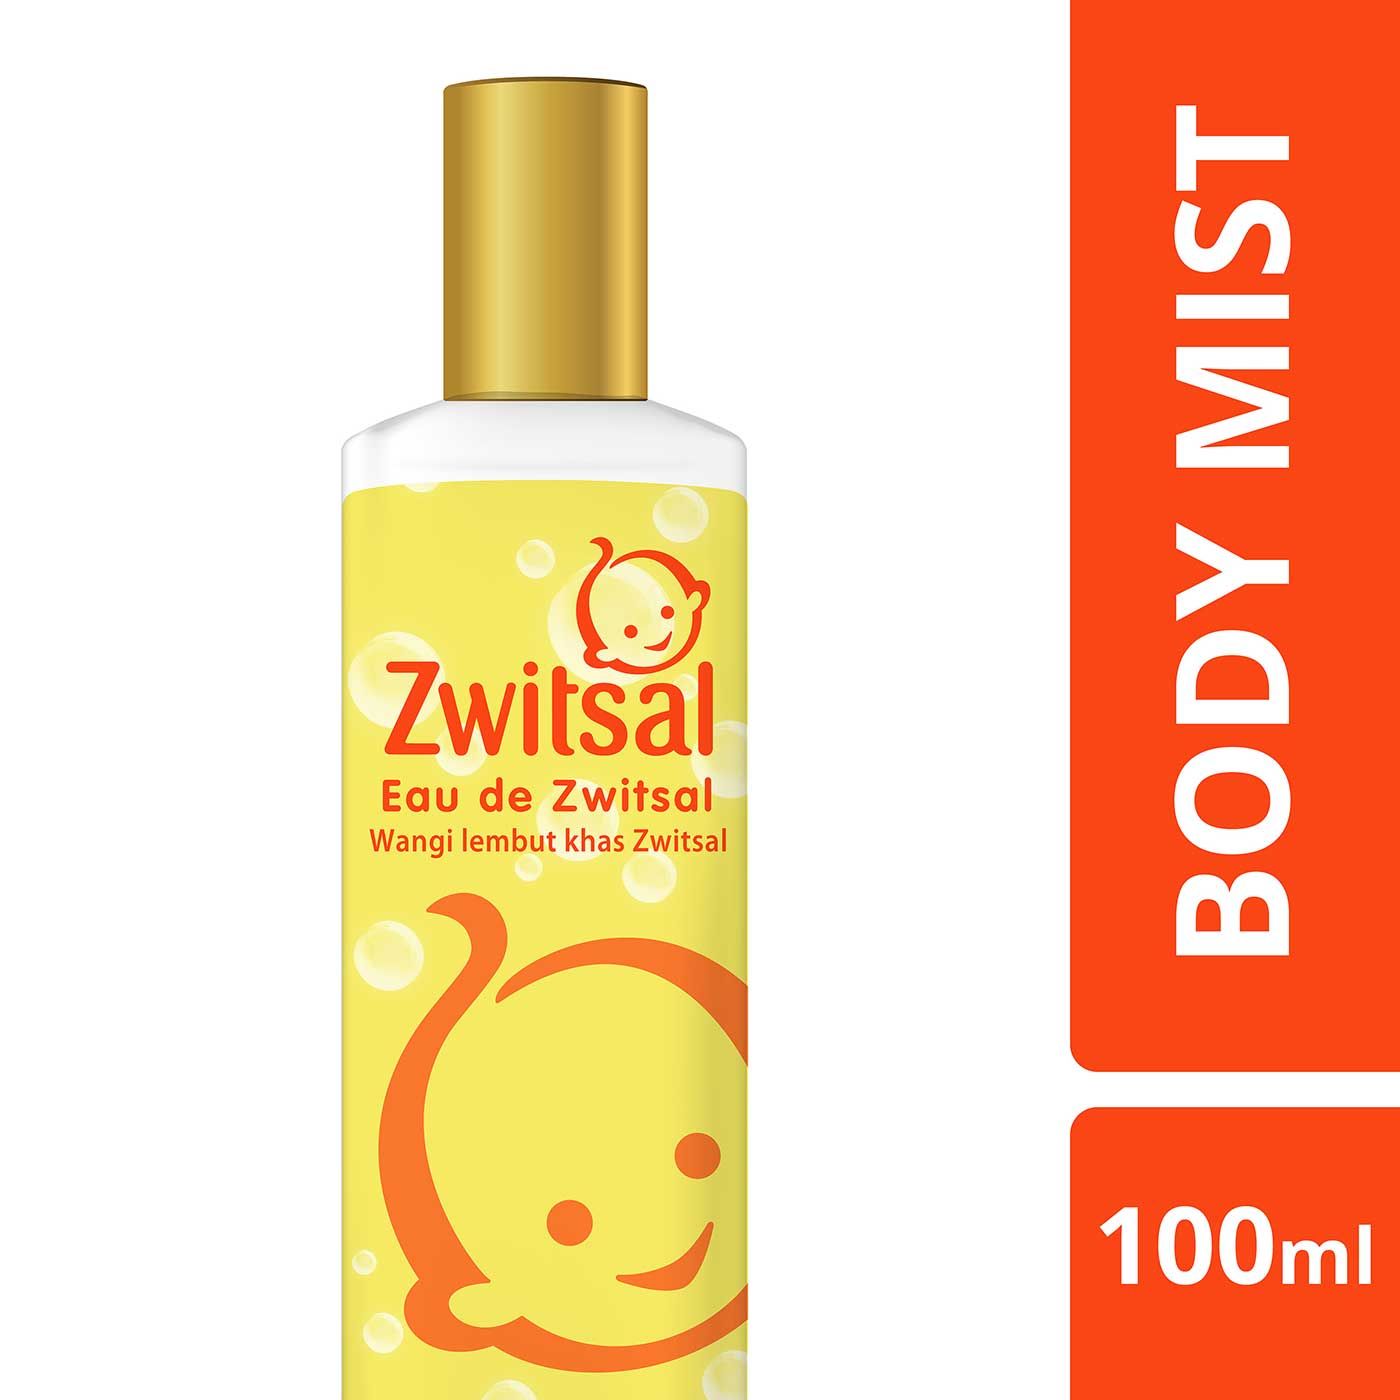 Free Zwitsal Eau De Toilette Body Mist 100ml - 1